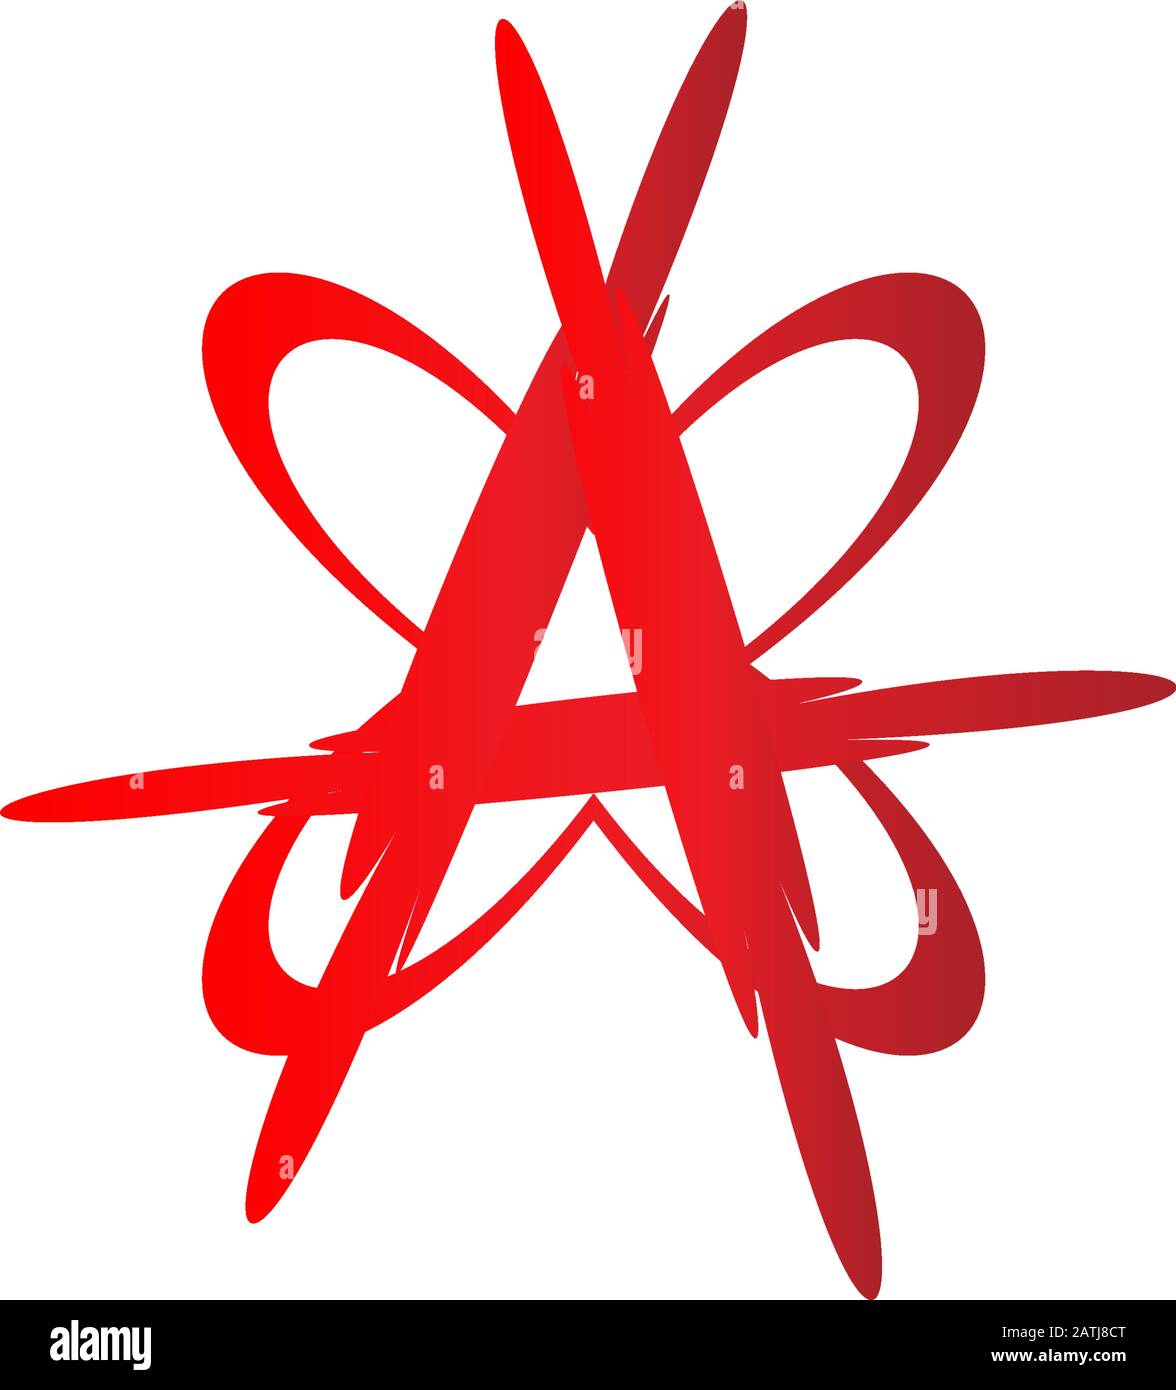 Anarchy Sign Illustration mit Schmetterlingsform, Letter A Alphabetic Logo Design Template, Blood Color, EPS 10-Vektordatei Stock Vektor